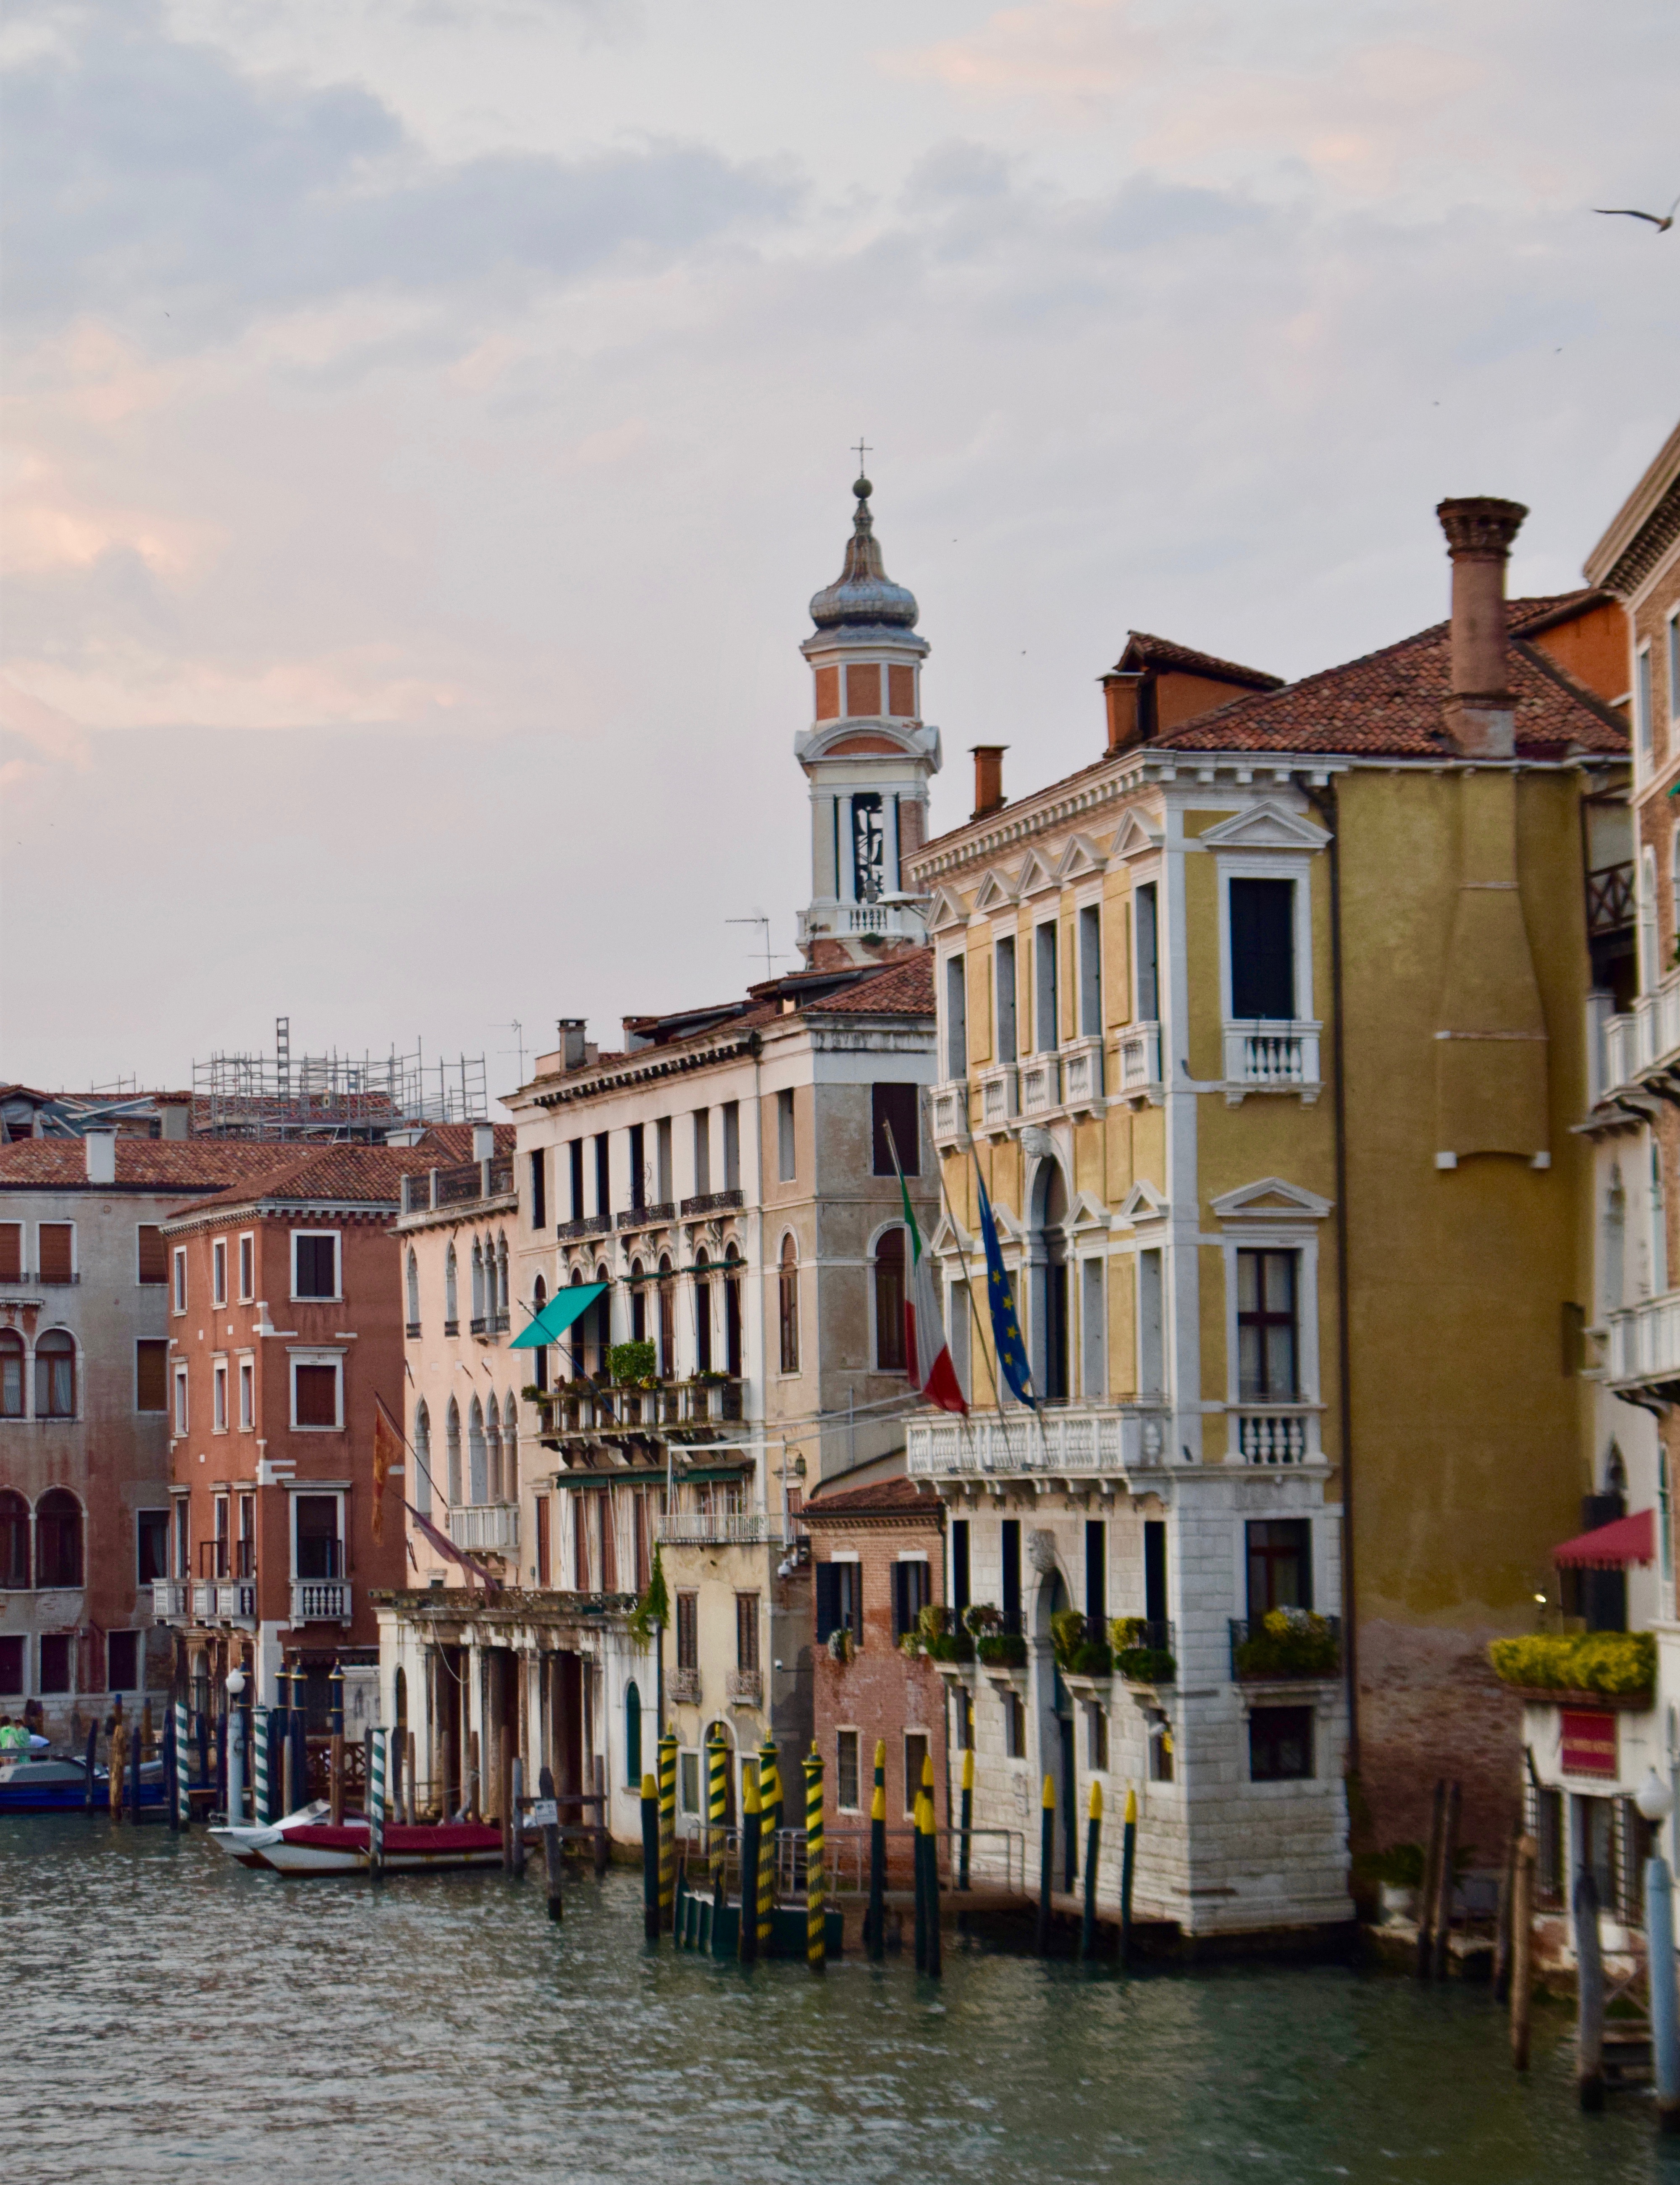 Colorful Pallazi on a Venice Canal